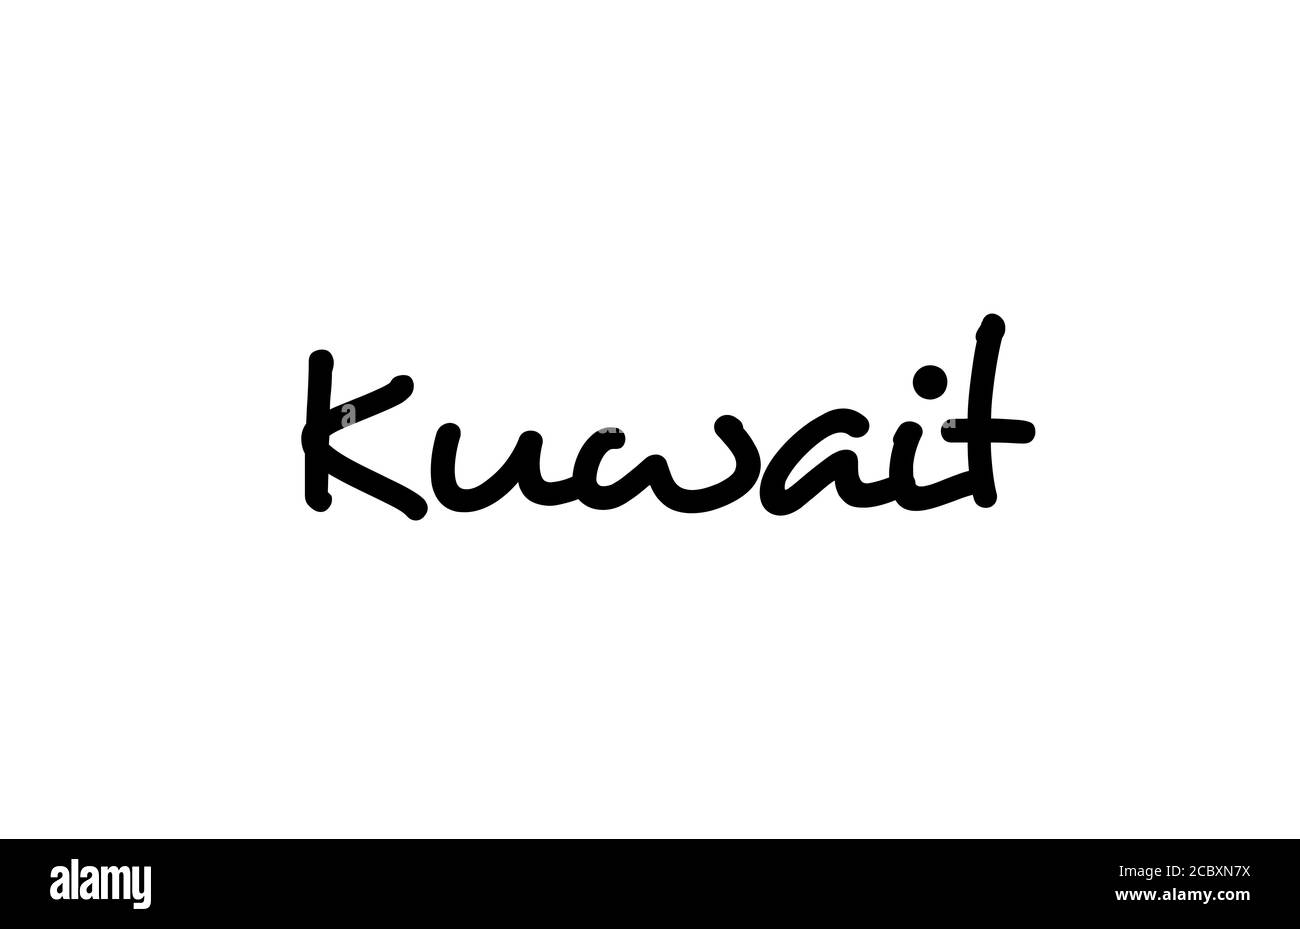 Koweït City texte manuscrit mot lettrage à la main. Texte de calligraphie. Typographie en noir Illustration de Vecteur